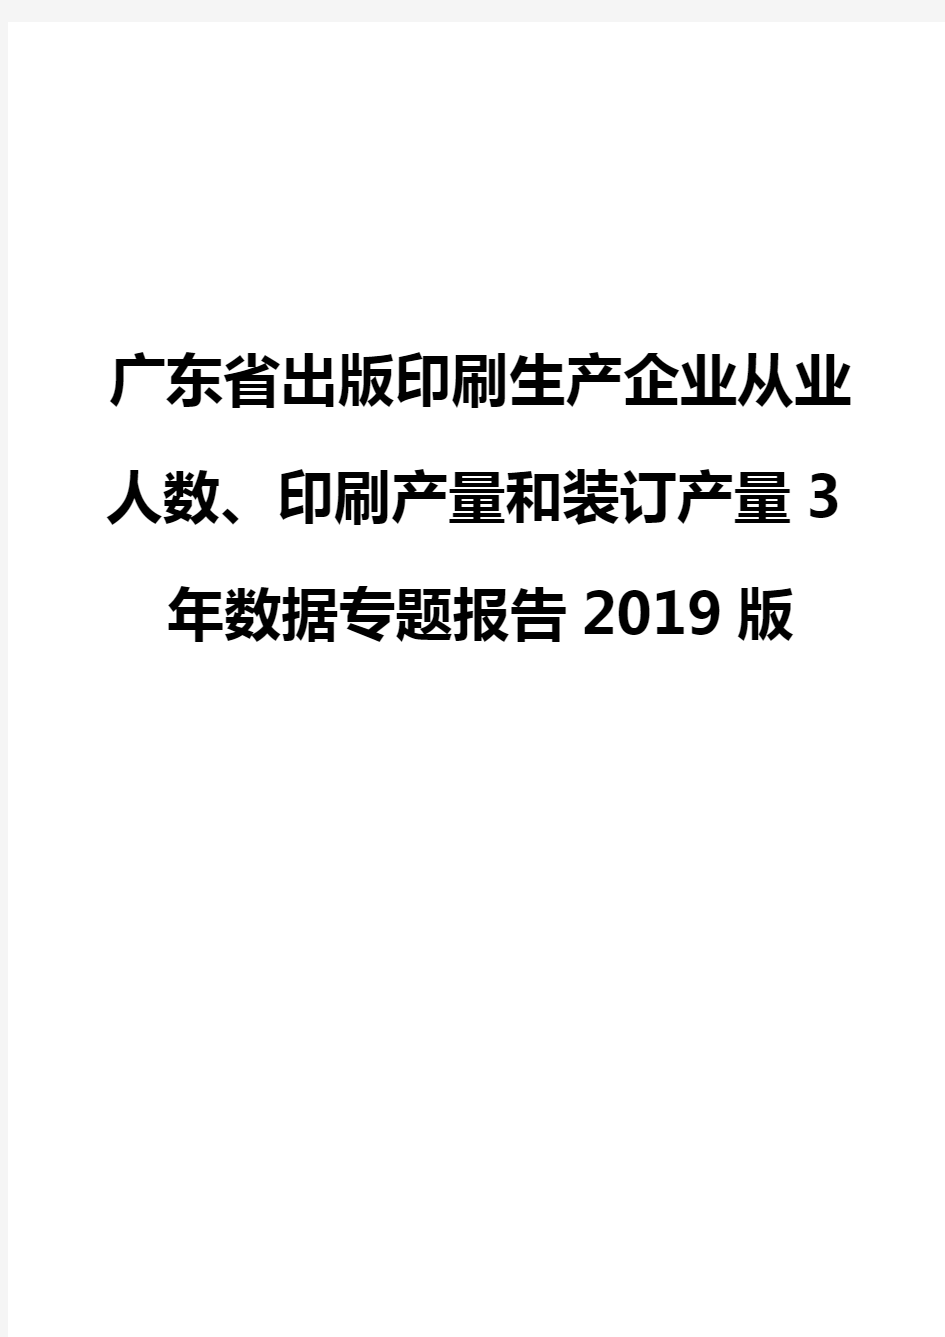 广东省出版印刷生产企业从业人数、印刷产量和装订产量3年数据专题报告2019版